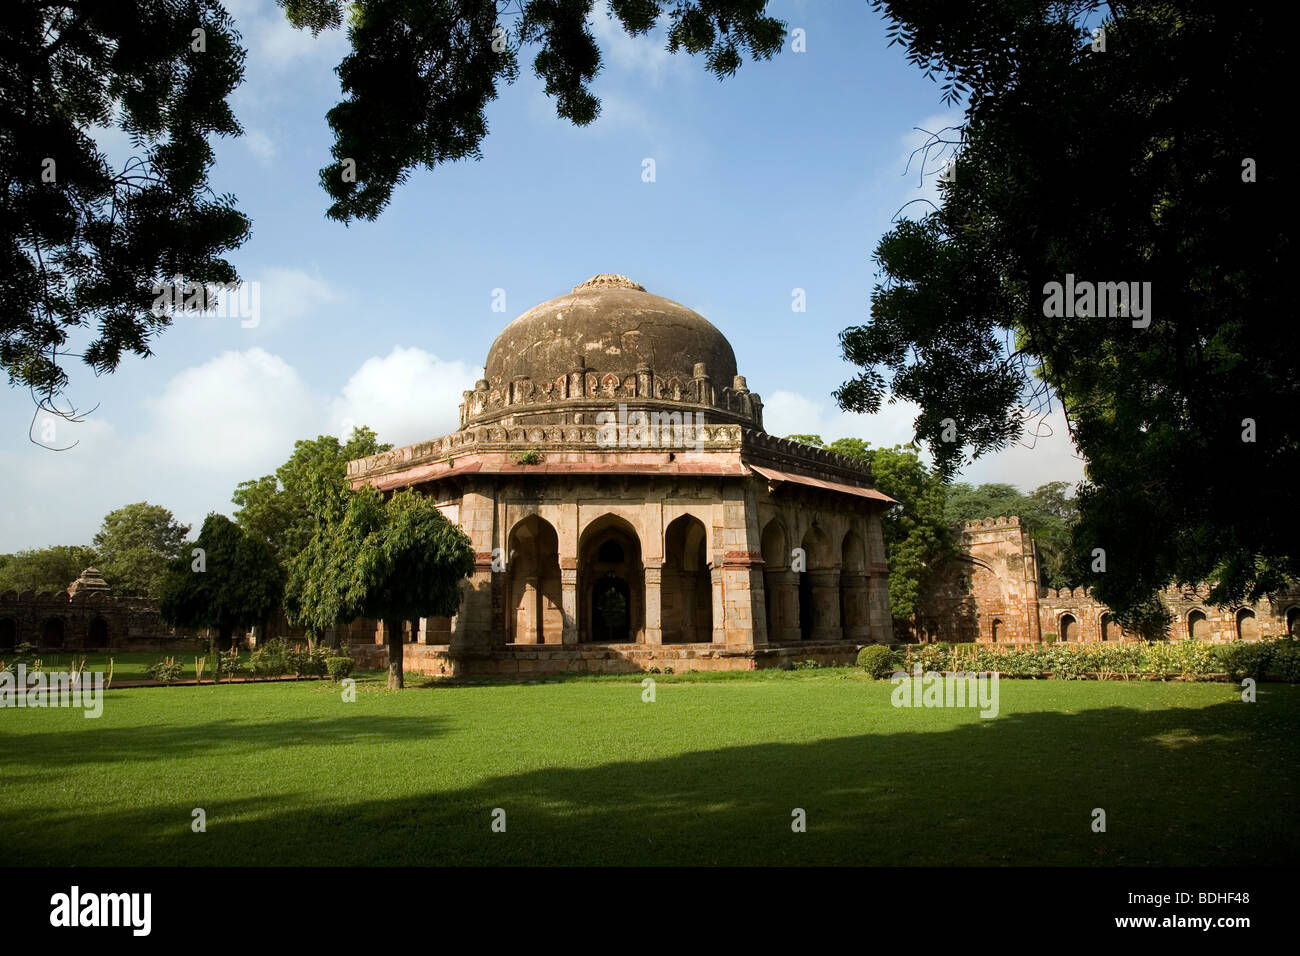 Tomb of Sikandar Lodi inside Lodi garden complex, New Delhi, India Stock Photo